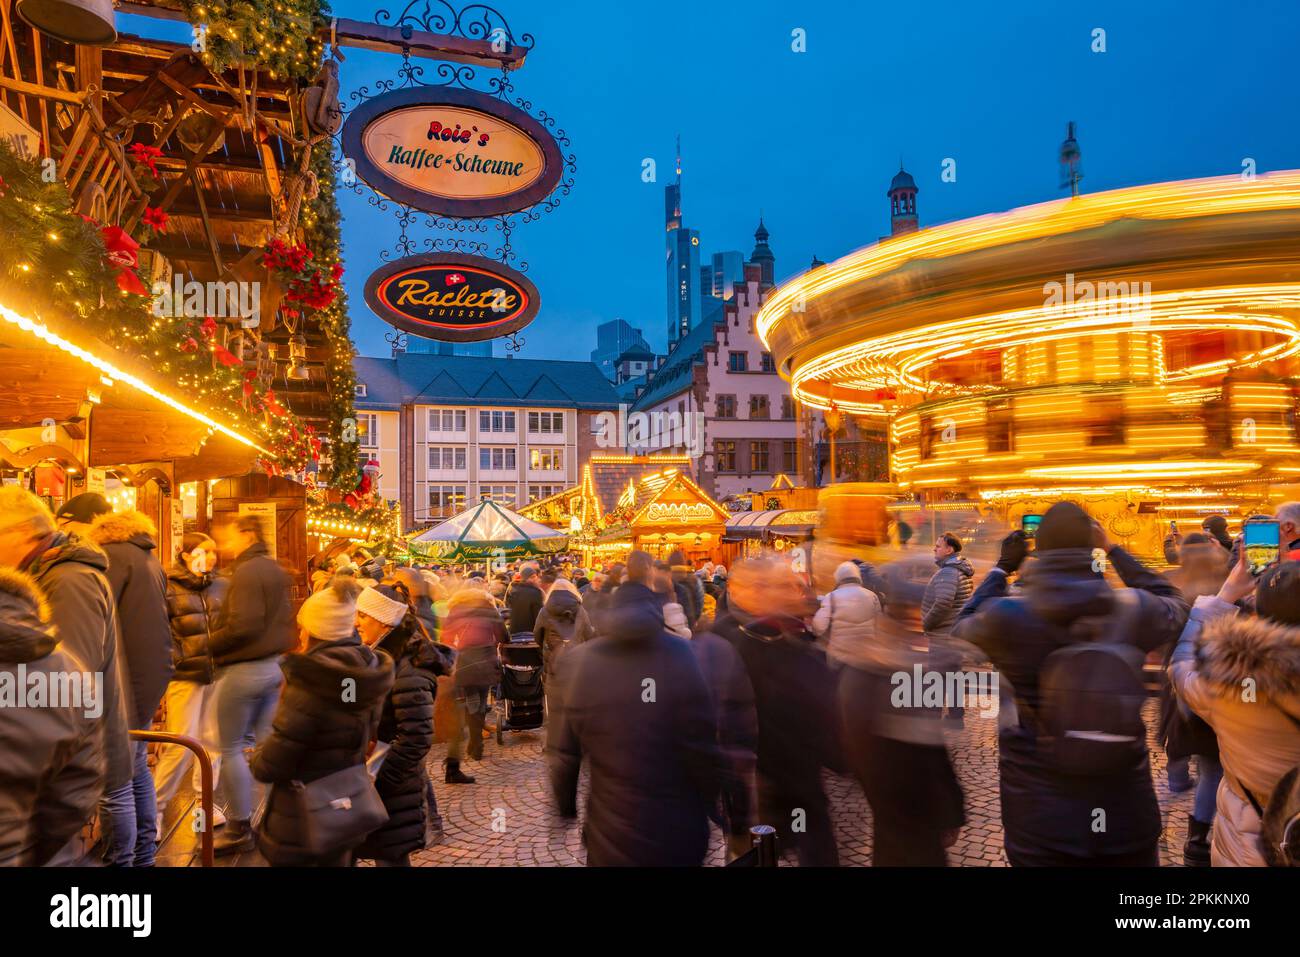 Vue sur le carrousel et le marché de Noël sur la place Roemerberg au crépuscule, Francfort-sur-le-main, Hesse, Allemagne, Europe Banque D'Images